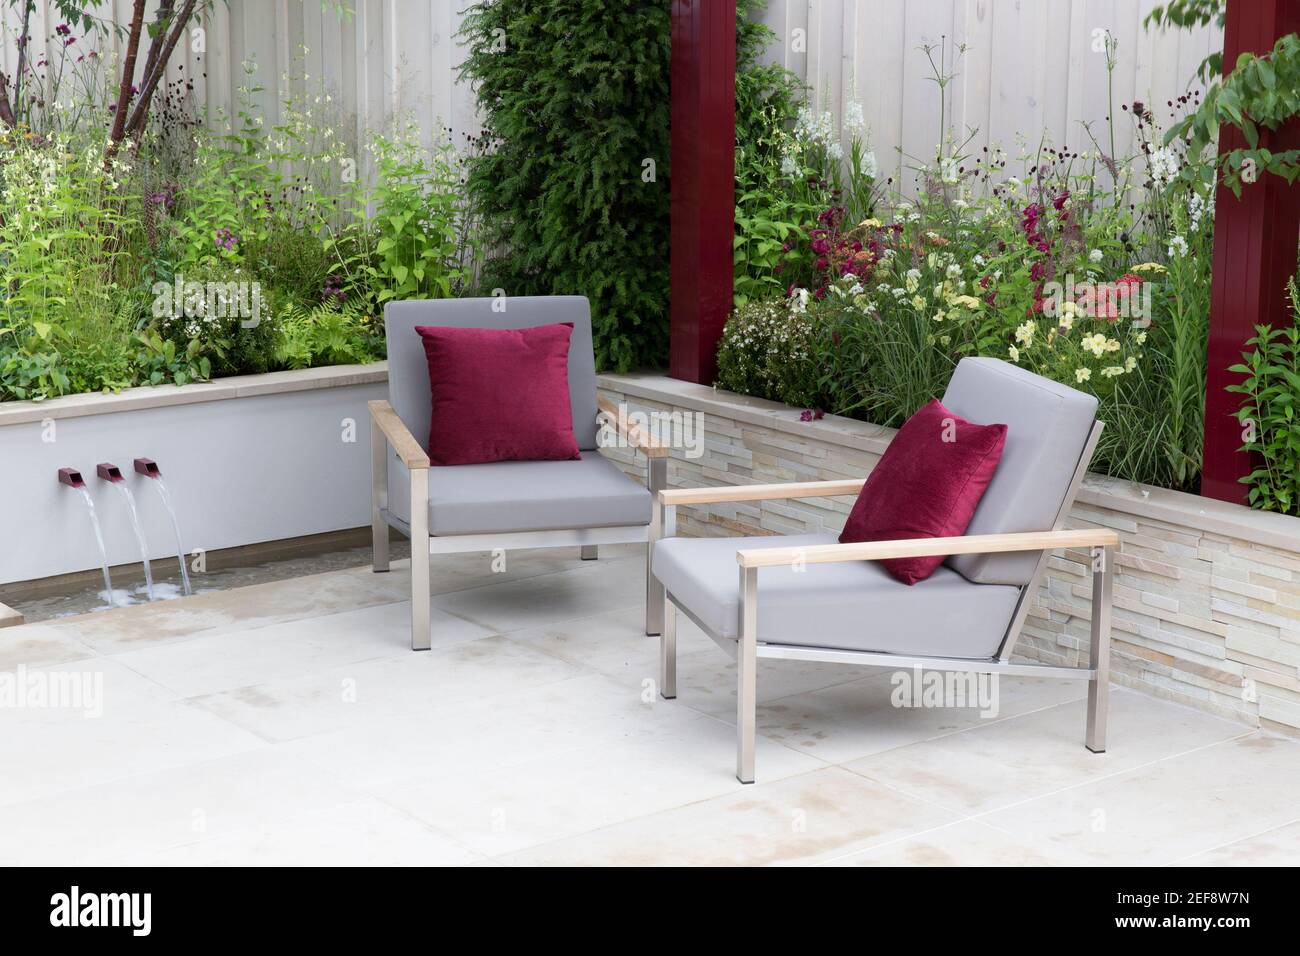 Moderno patio urbano in pietra giardino con sedie da giardino con cuscini rossi - letti rialzati giardino bordo fiore - Estate - Londra UK Inghilterra Foto Stock